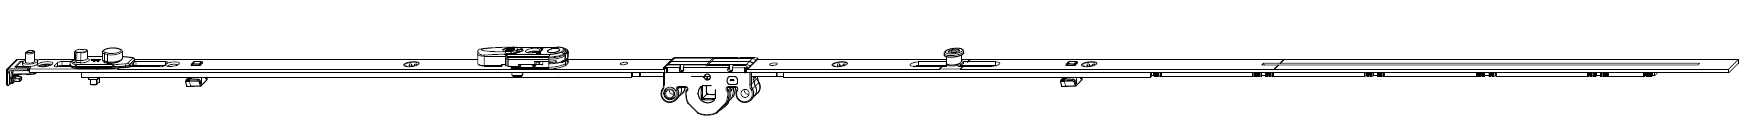 MAICO -  Cremonese MULTI-MATIC anta ribalta antieffrazione altezza maniglia fissa con piedino e dss per ribalta e bilanciere - gr / dim. 1700 - entrata 15 - alt. man. 700 - lbb/hbb 1591 - 1700